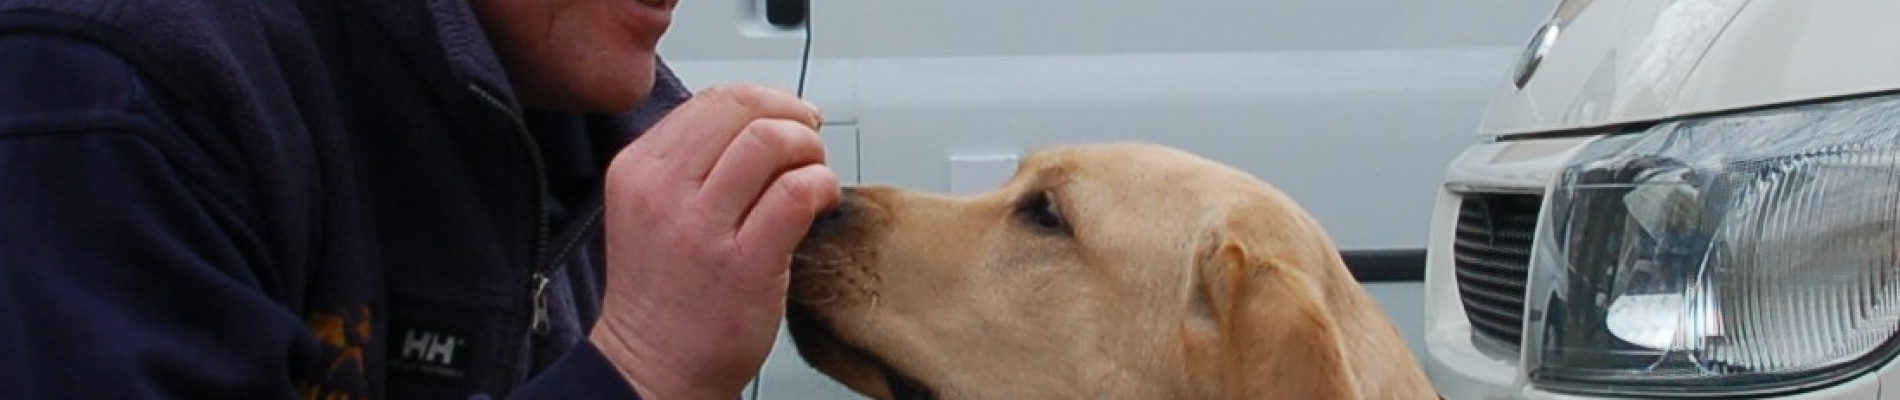 Hoofd Instructeur Kees geeft een koekje aan geleidehond in opleiding